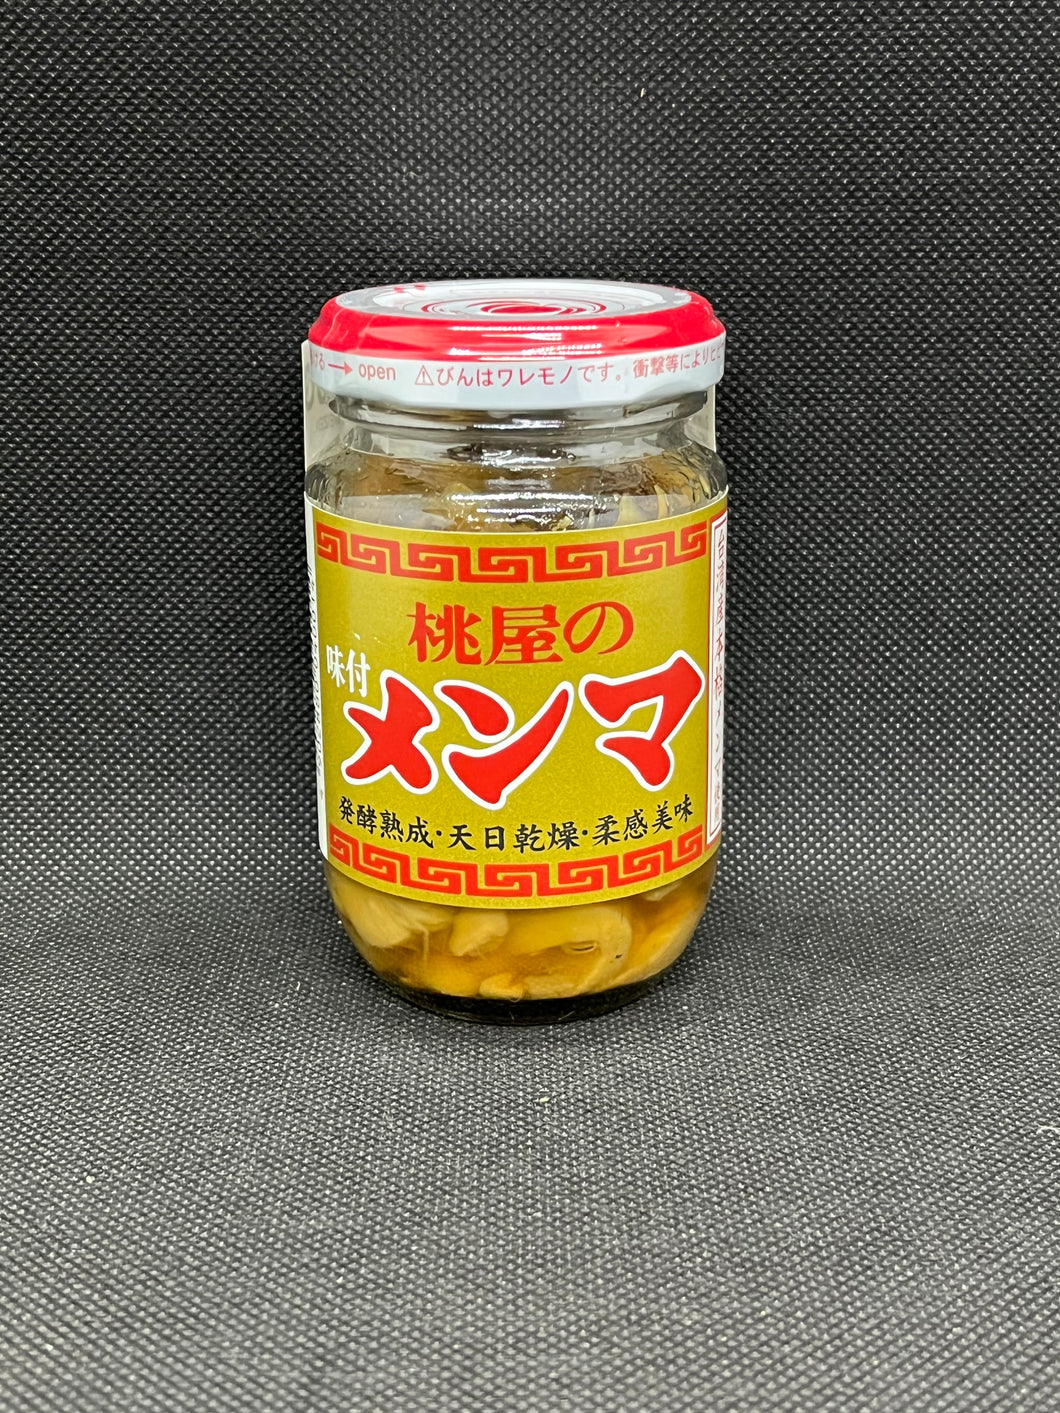 桃屋 メンマ (100g)